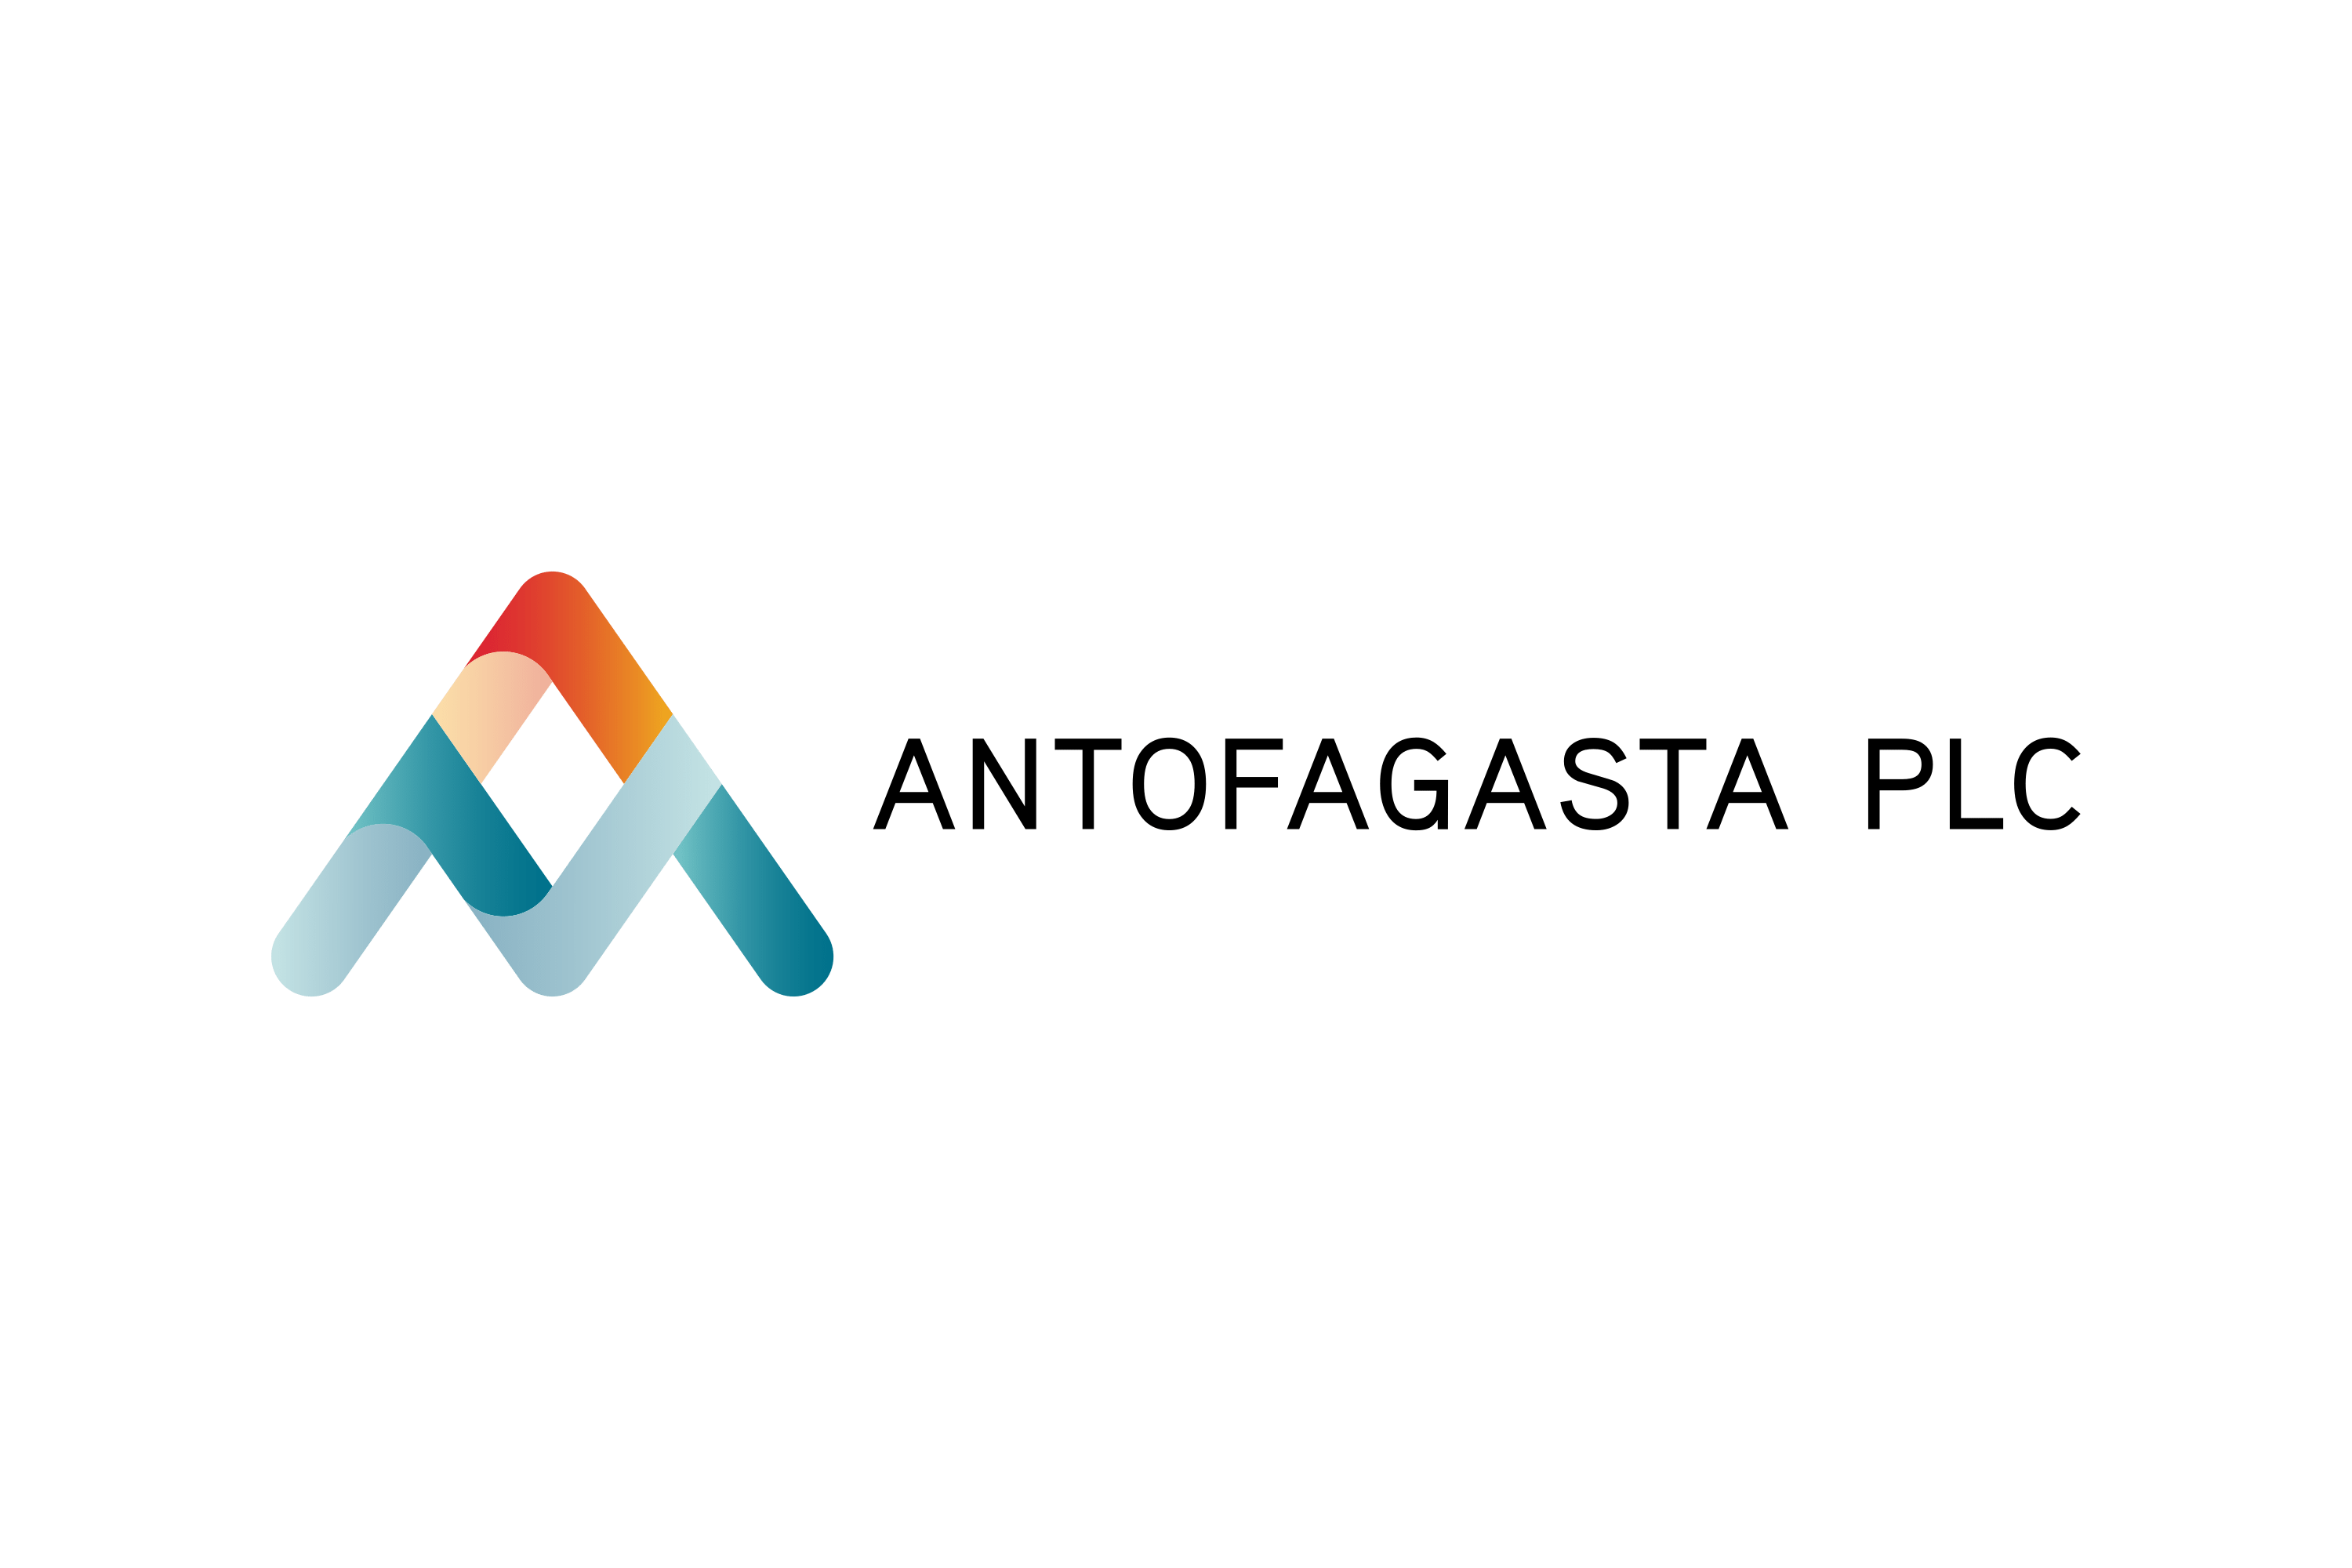 Download Antofagasta PLC Logo in SVG Vector or PNG File Format - Logo.wine